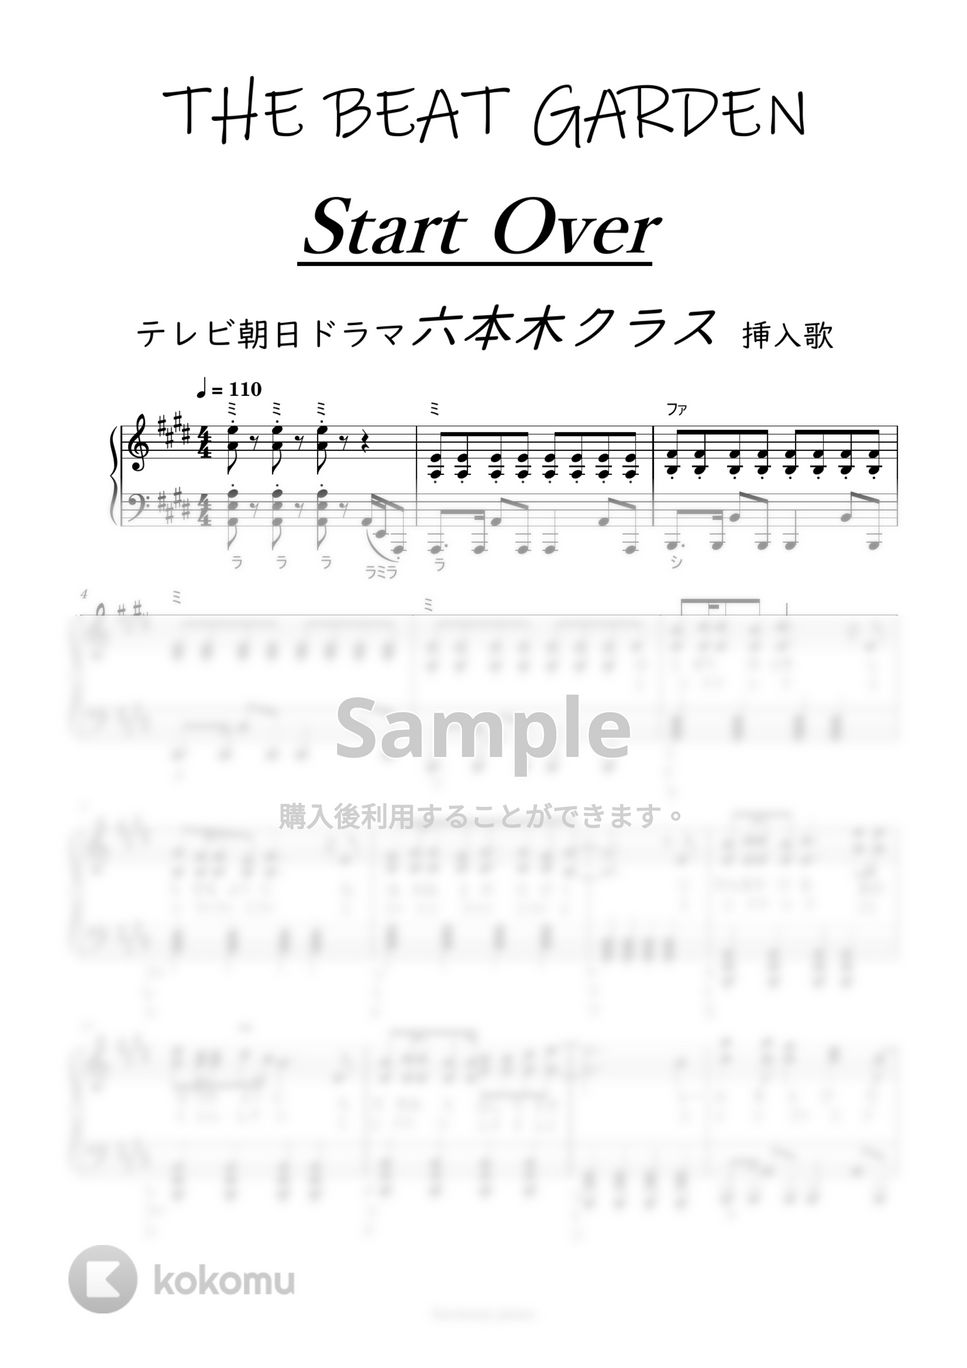 六本木クラス/THE BEAT GARDEN - [初級]Start Over (ドレミ付) by harmony piano